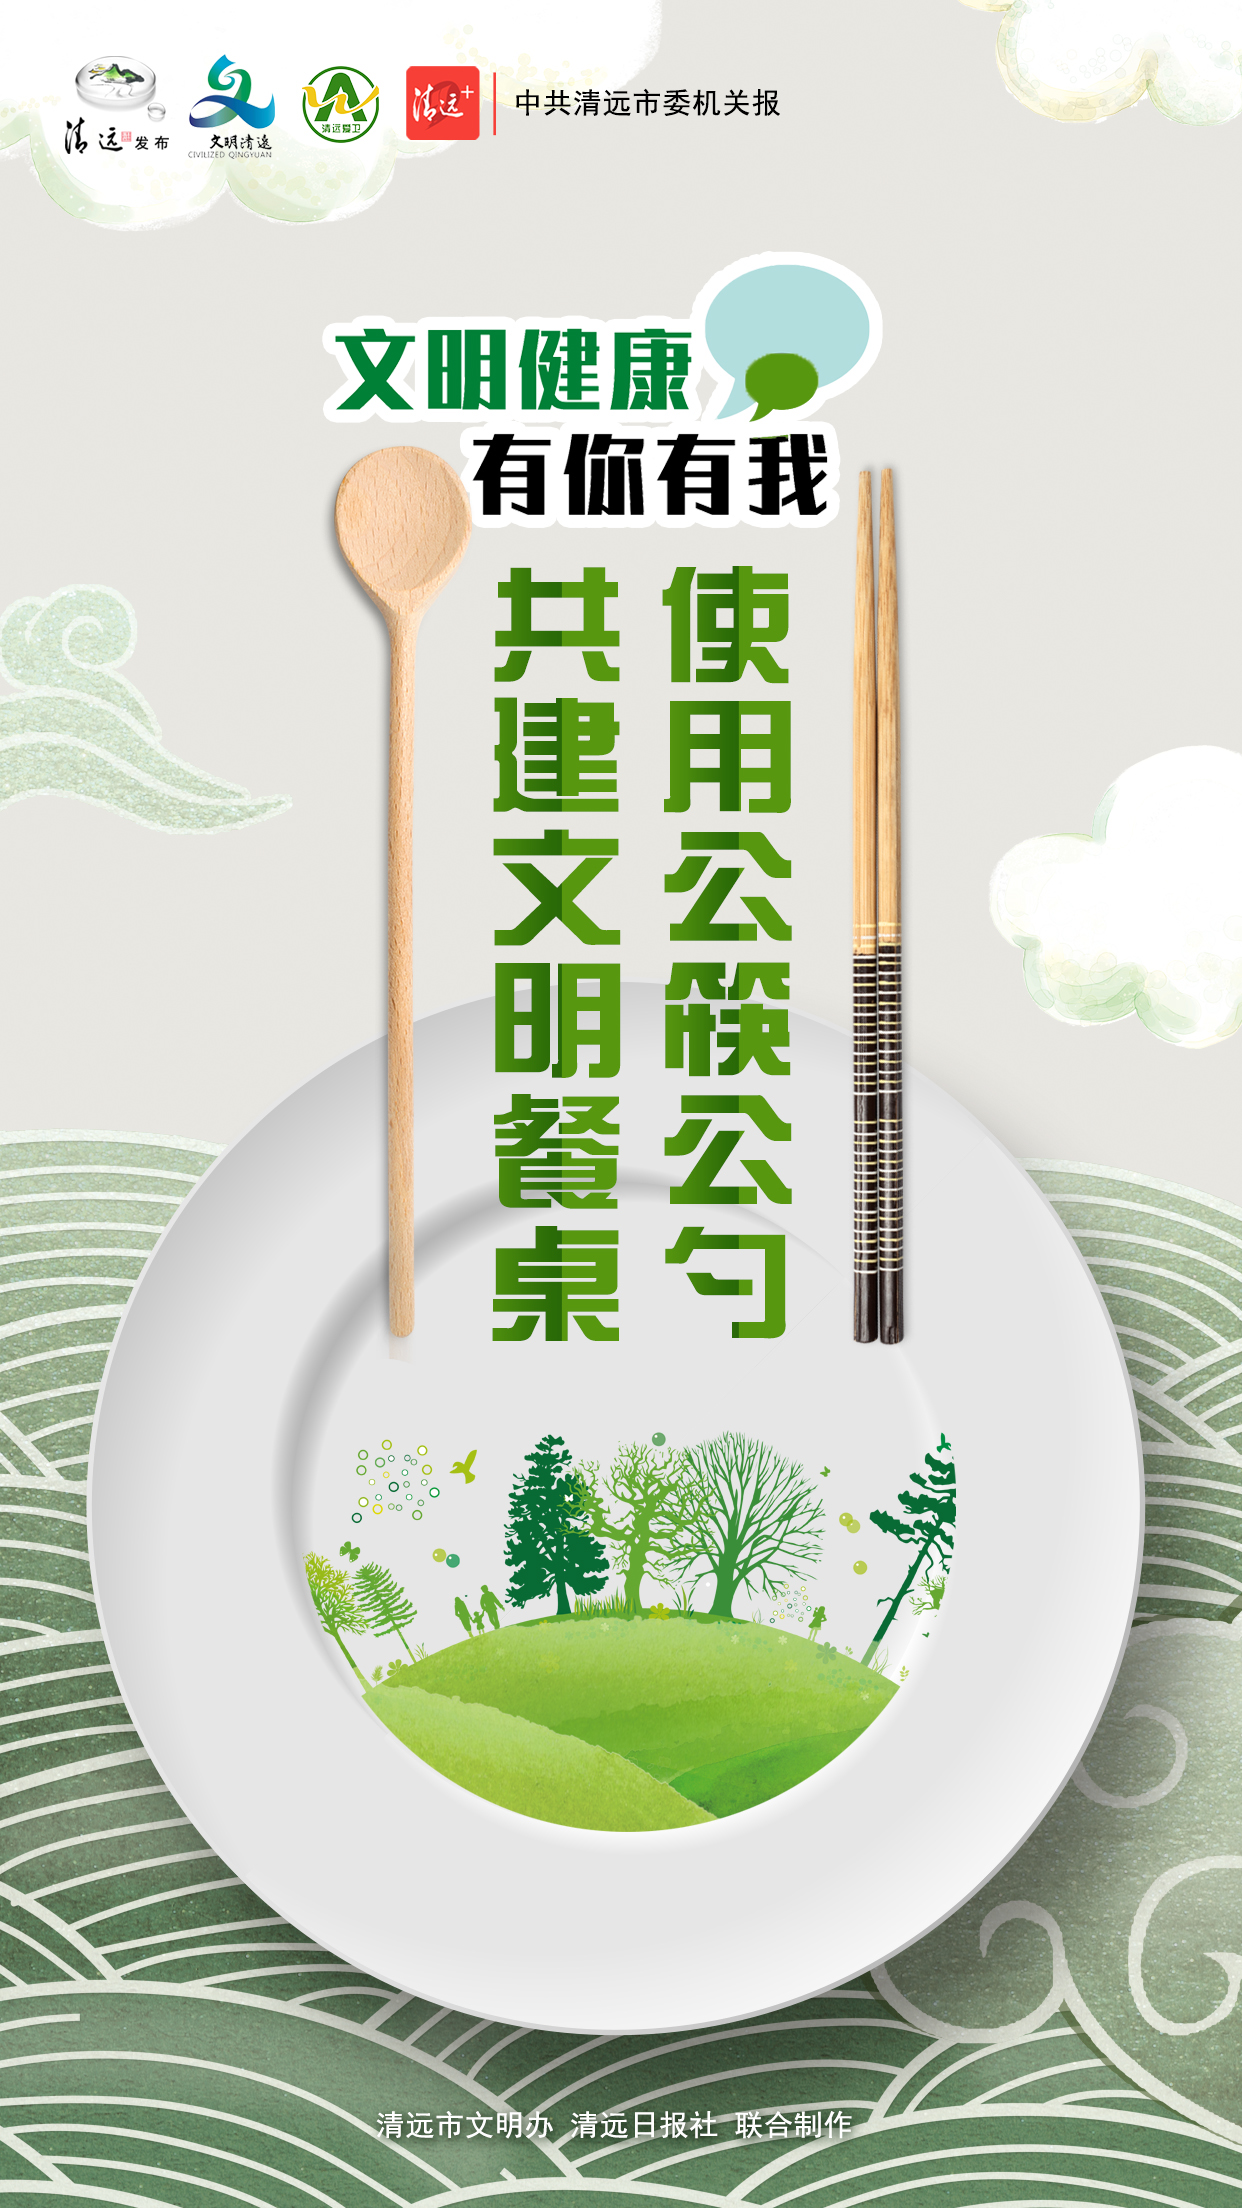 【文明健康有你有我】公筷公勺系列